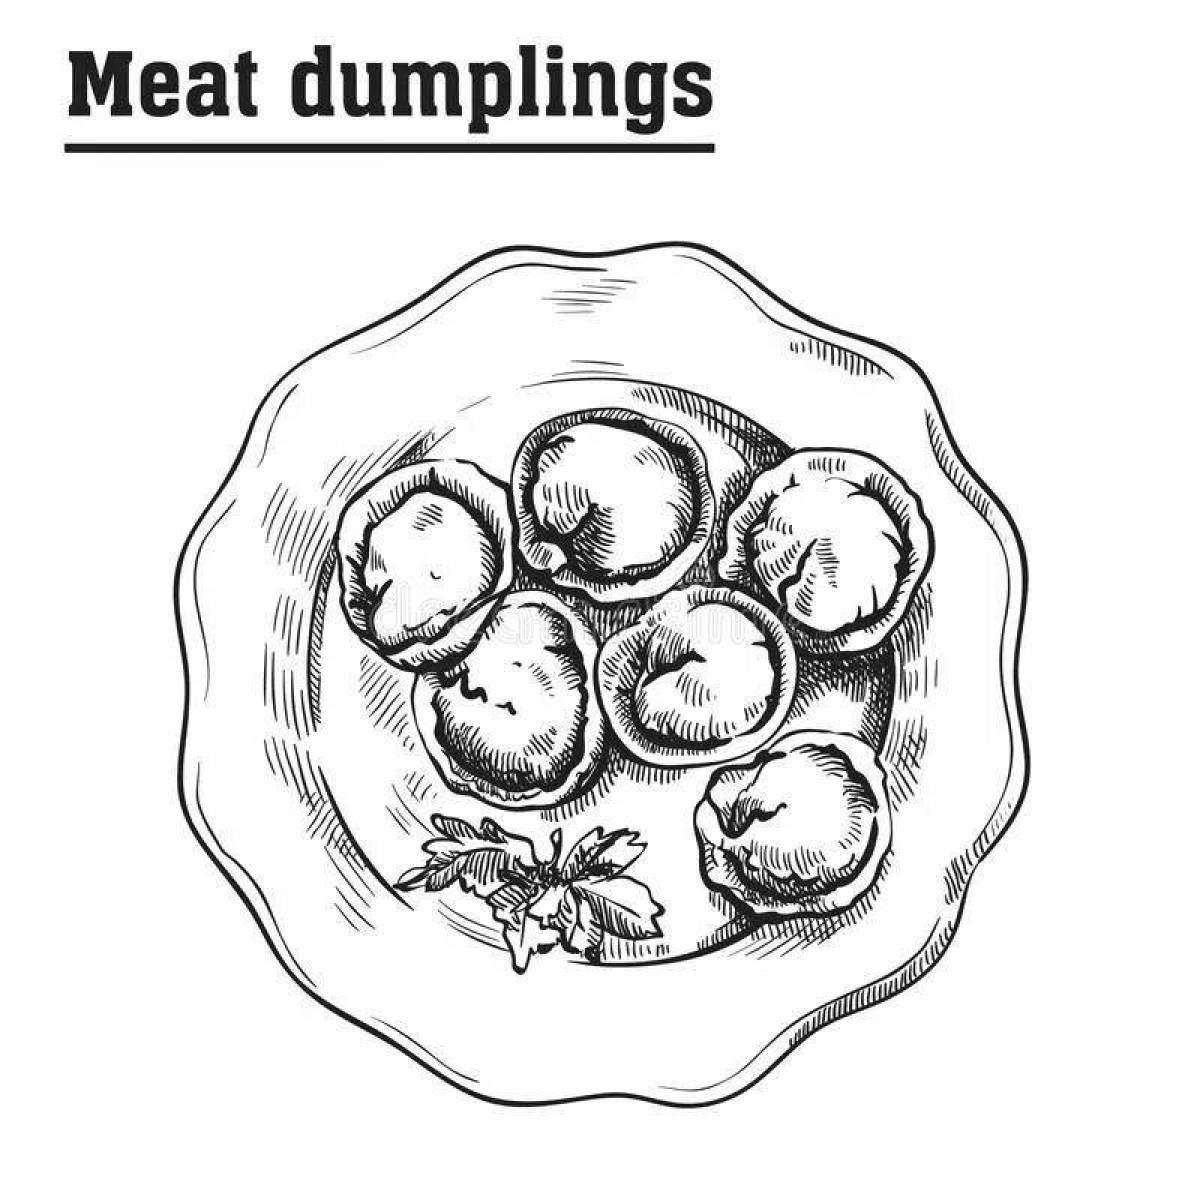 Fancy dumpling coloring page